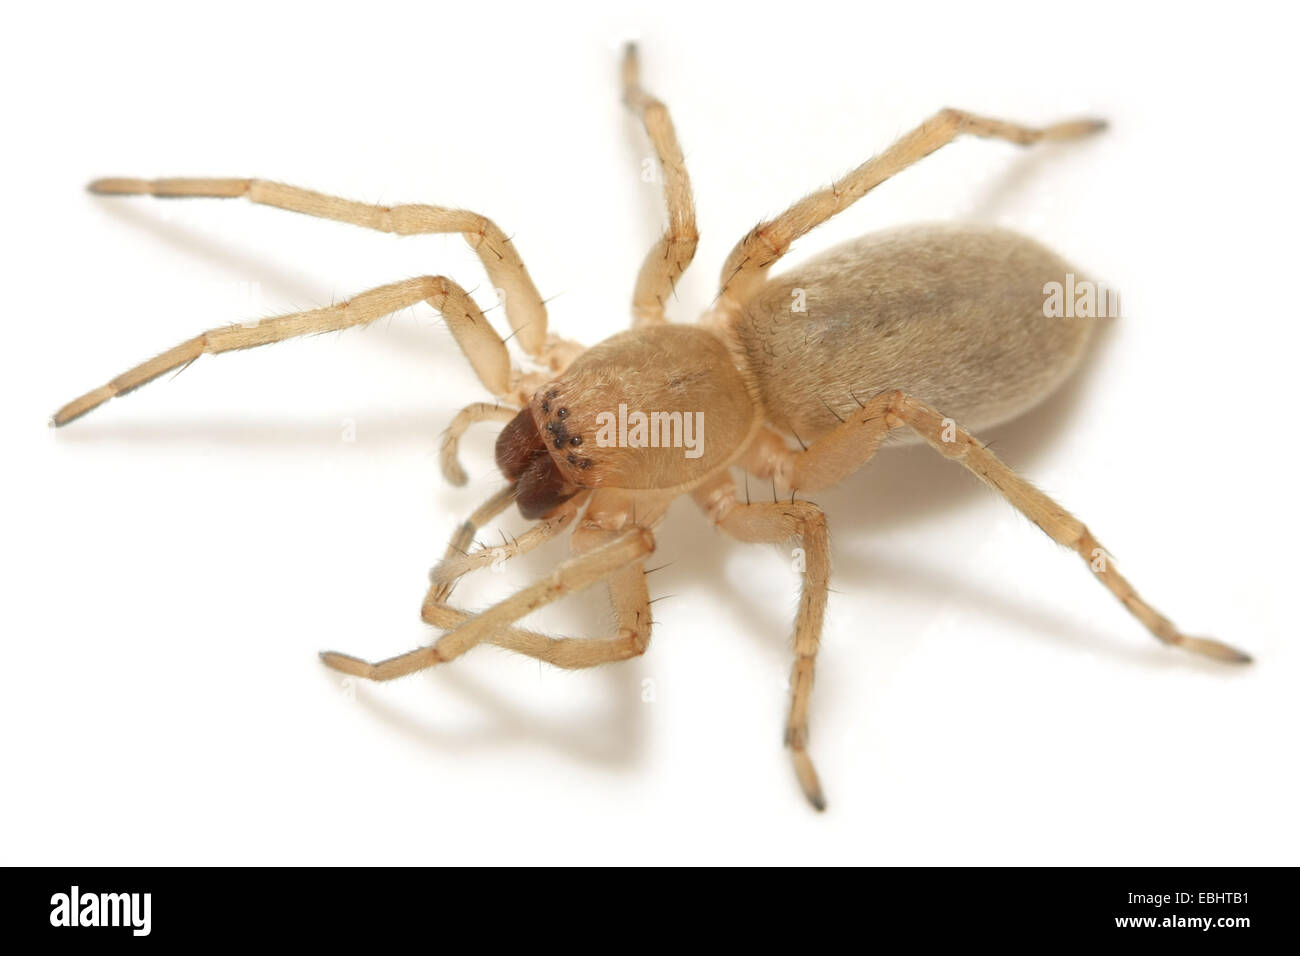 Une femme araignée araignée Clubiona phragmitis (Sac) sur fond blanc. Les araignées Sac font partie de la famille Clubionidae. Banque D'Images